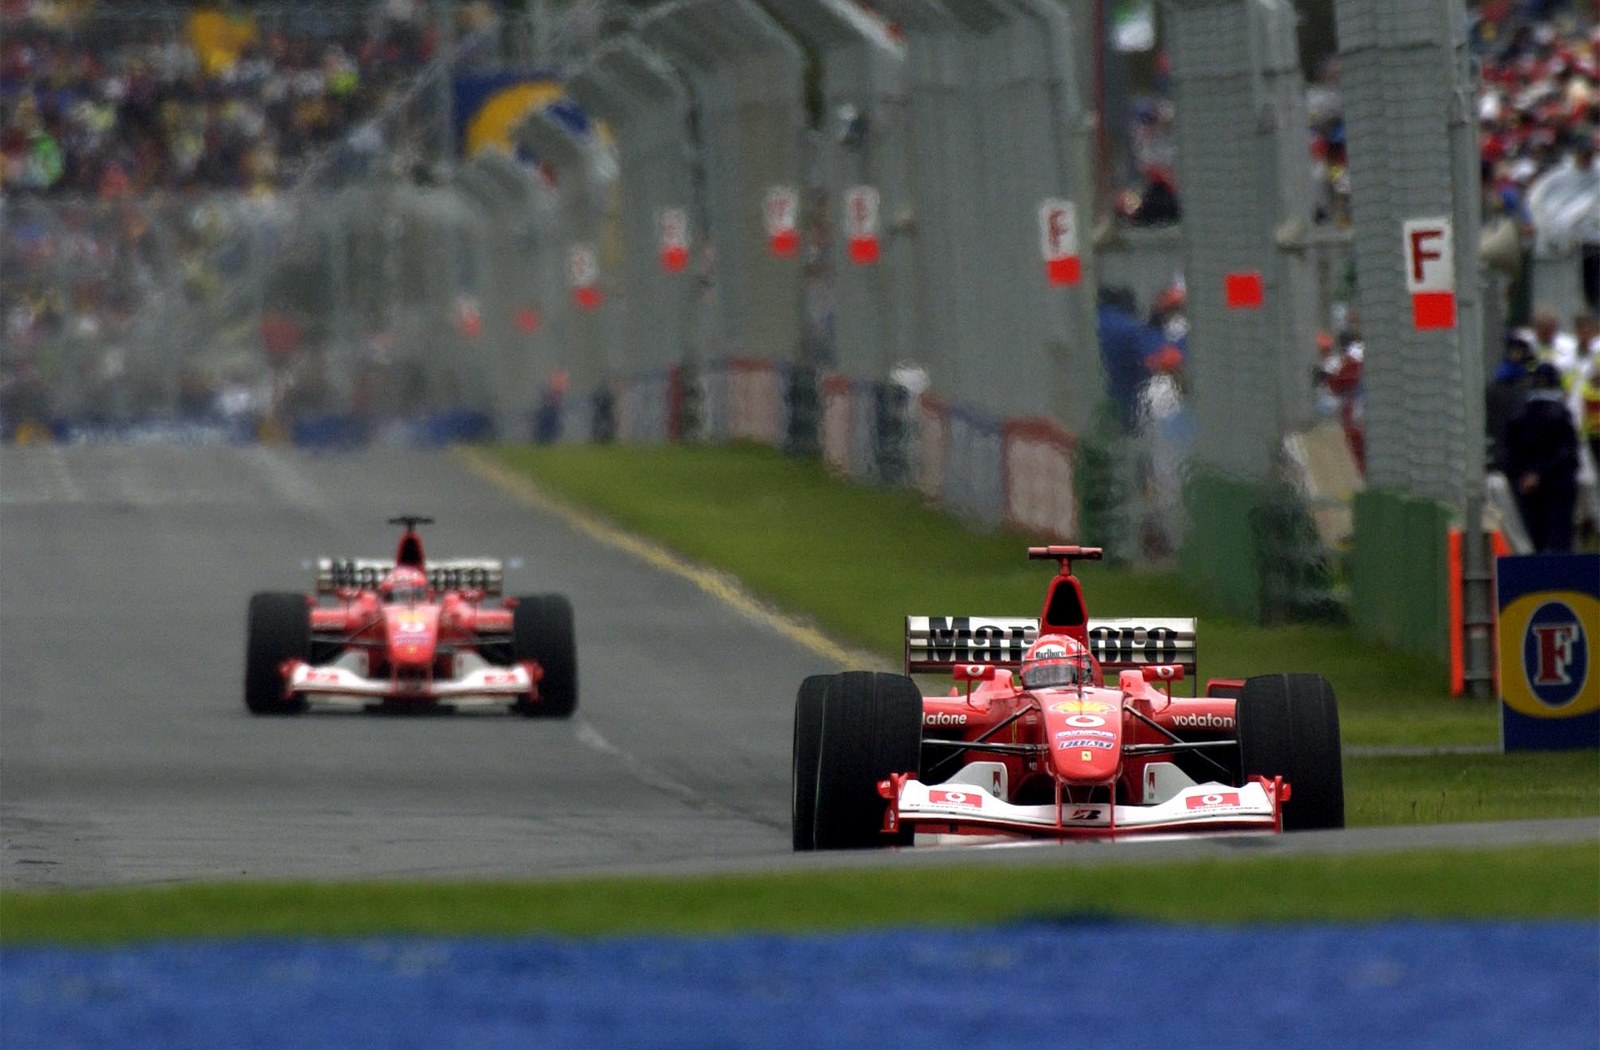 Les deux Ferrari s'échappent en tête lors des premiers tours du GP d'Australie 2003